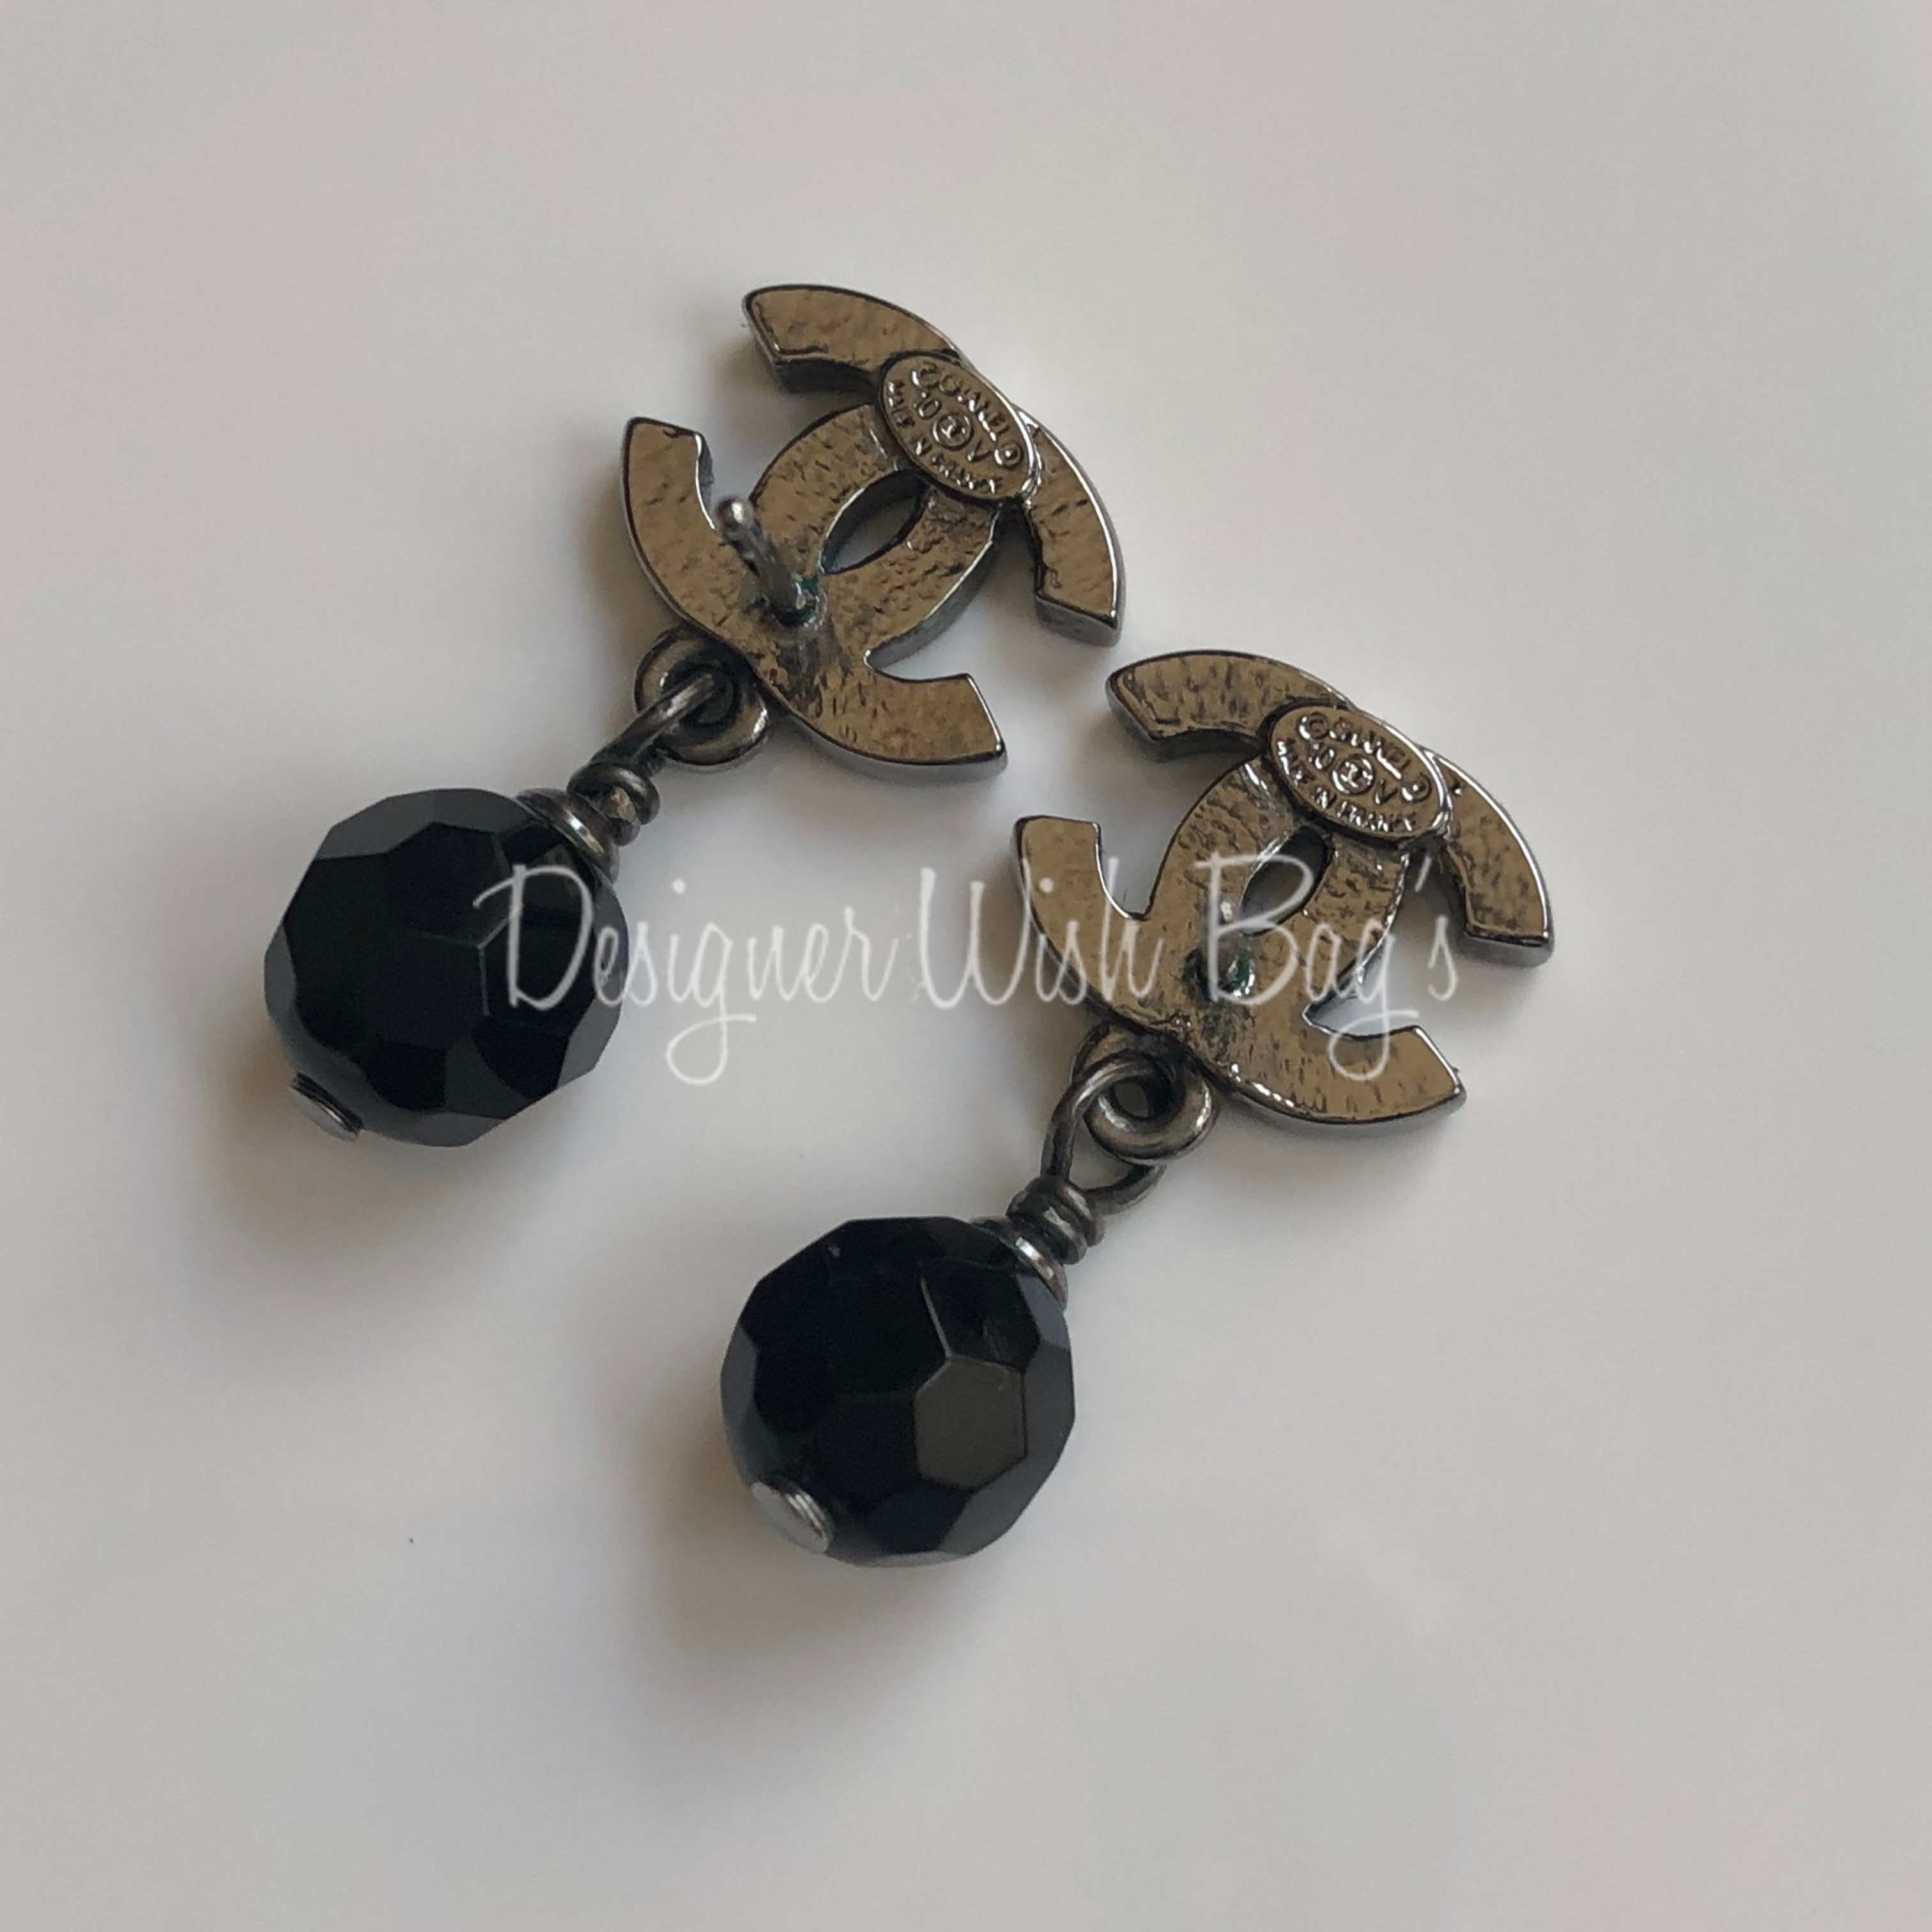 Cc earrings Chanel Black in Plastic - 20769756